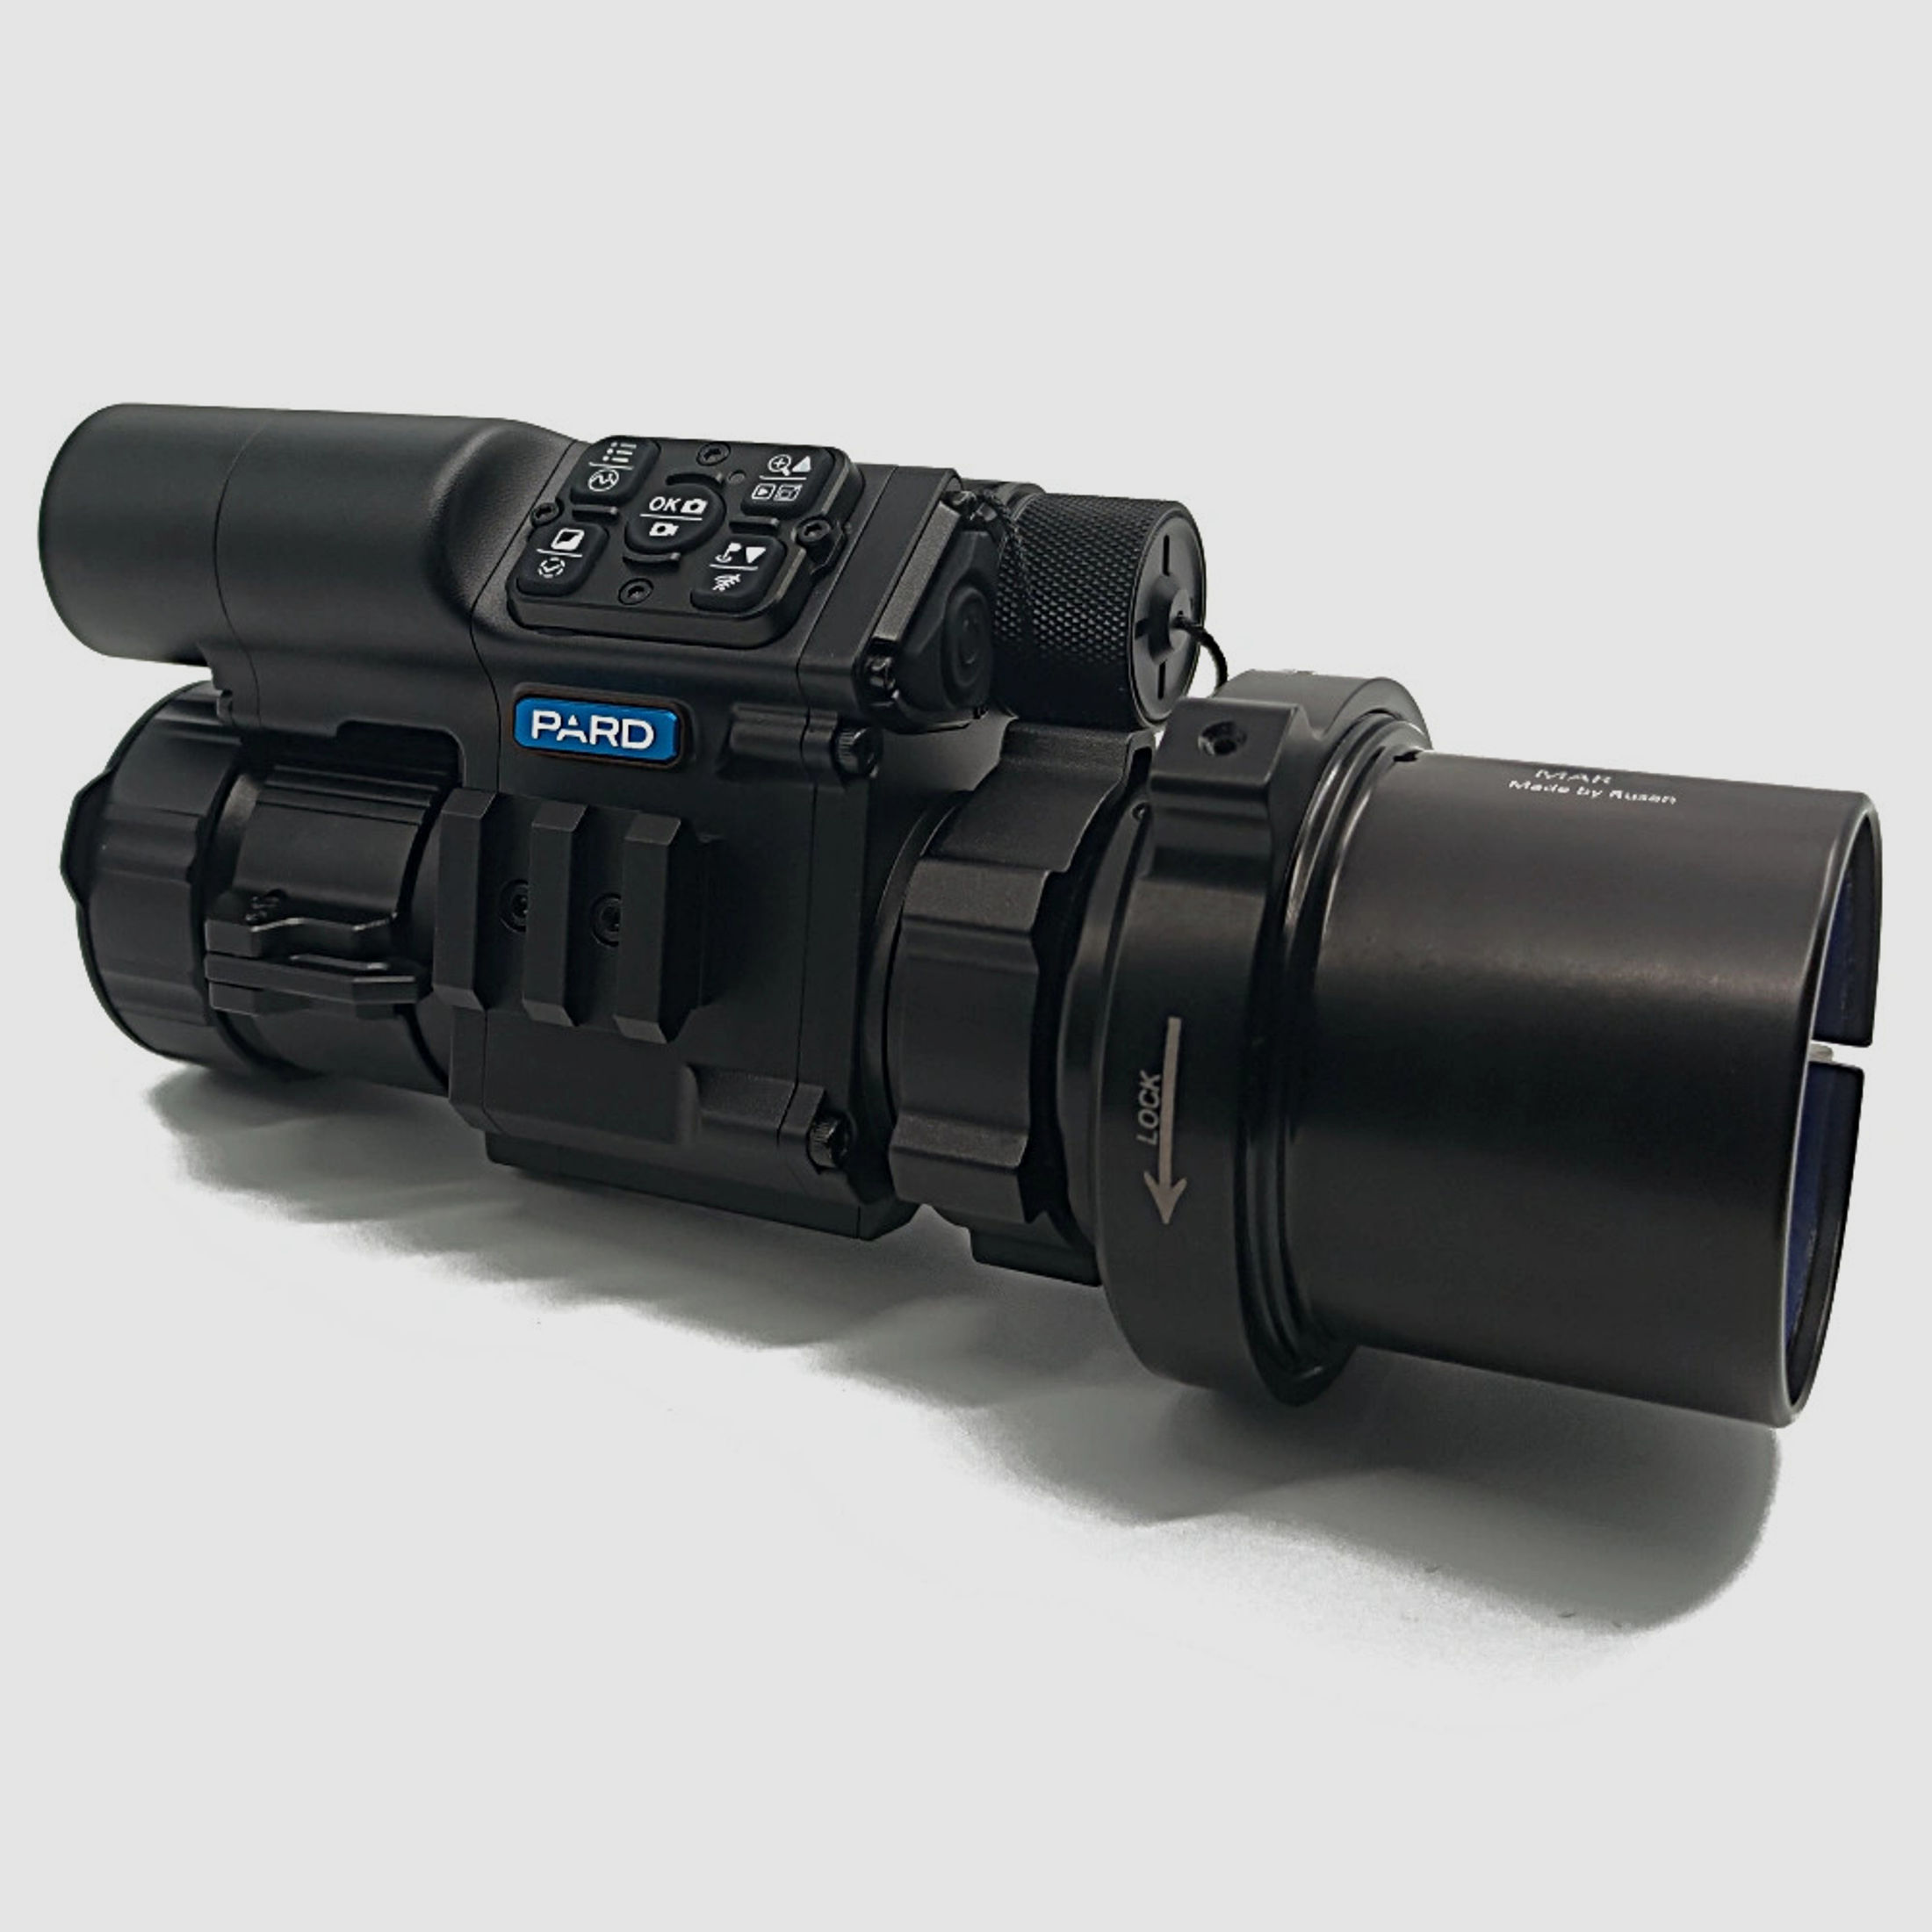 PARD FD1 Nachtsicht 3 in 1 Vorsatz, Monokular & Zielfernrohr - 850 nm mit LRF 58 mm RUSAN MAR + RUSAN MCR